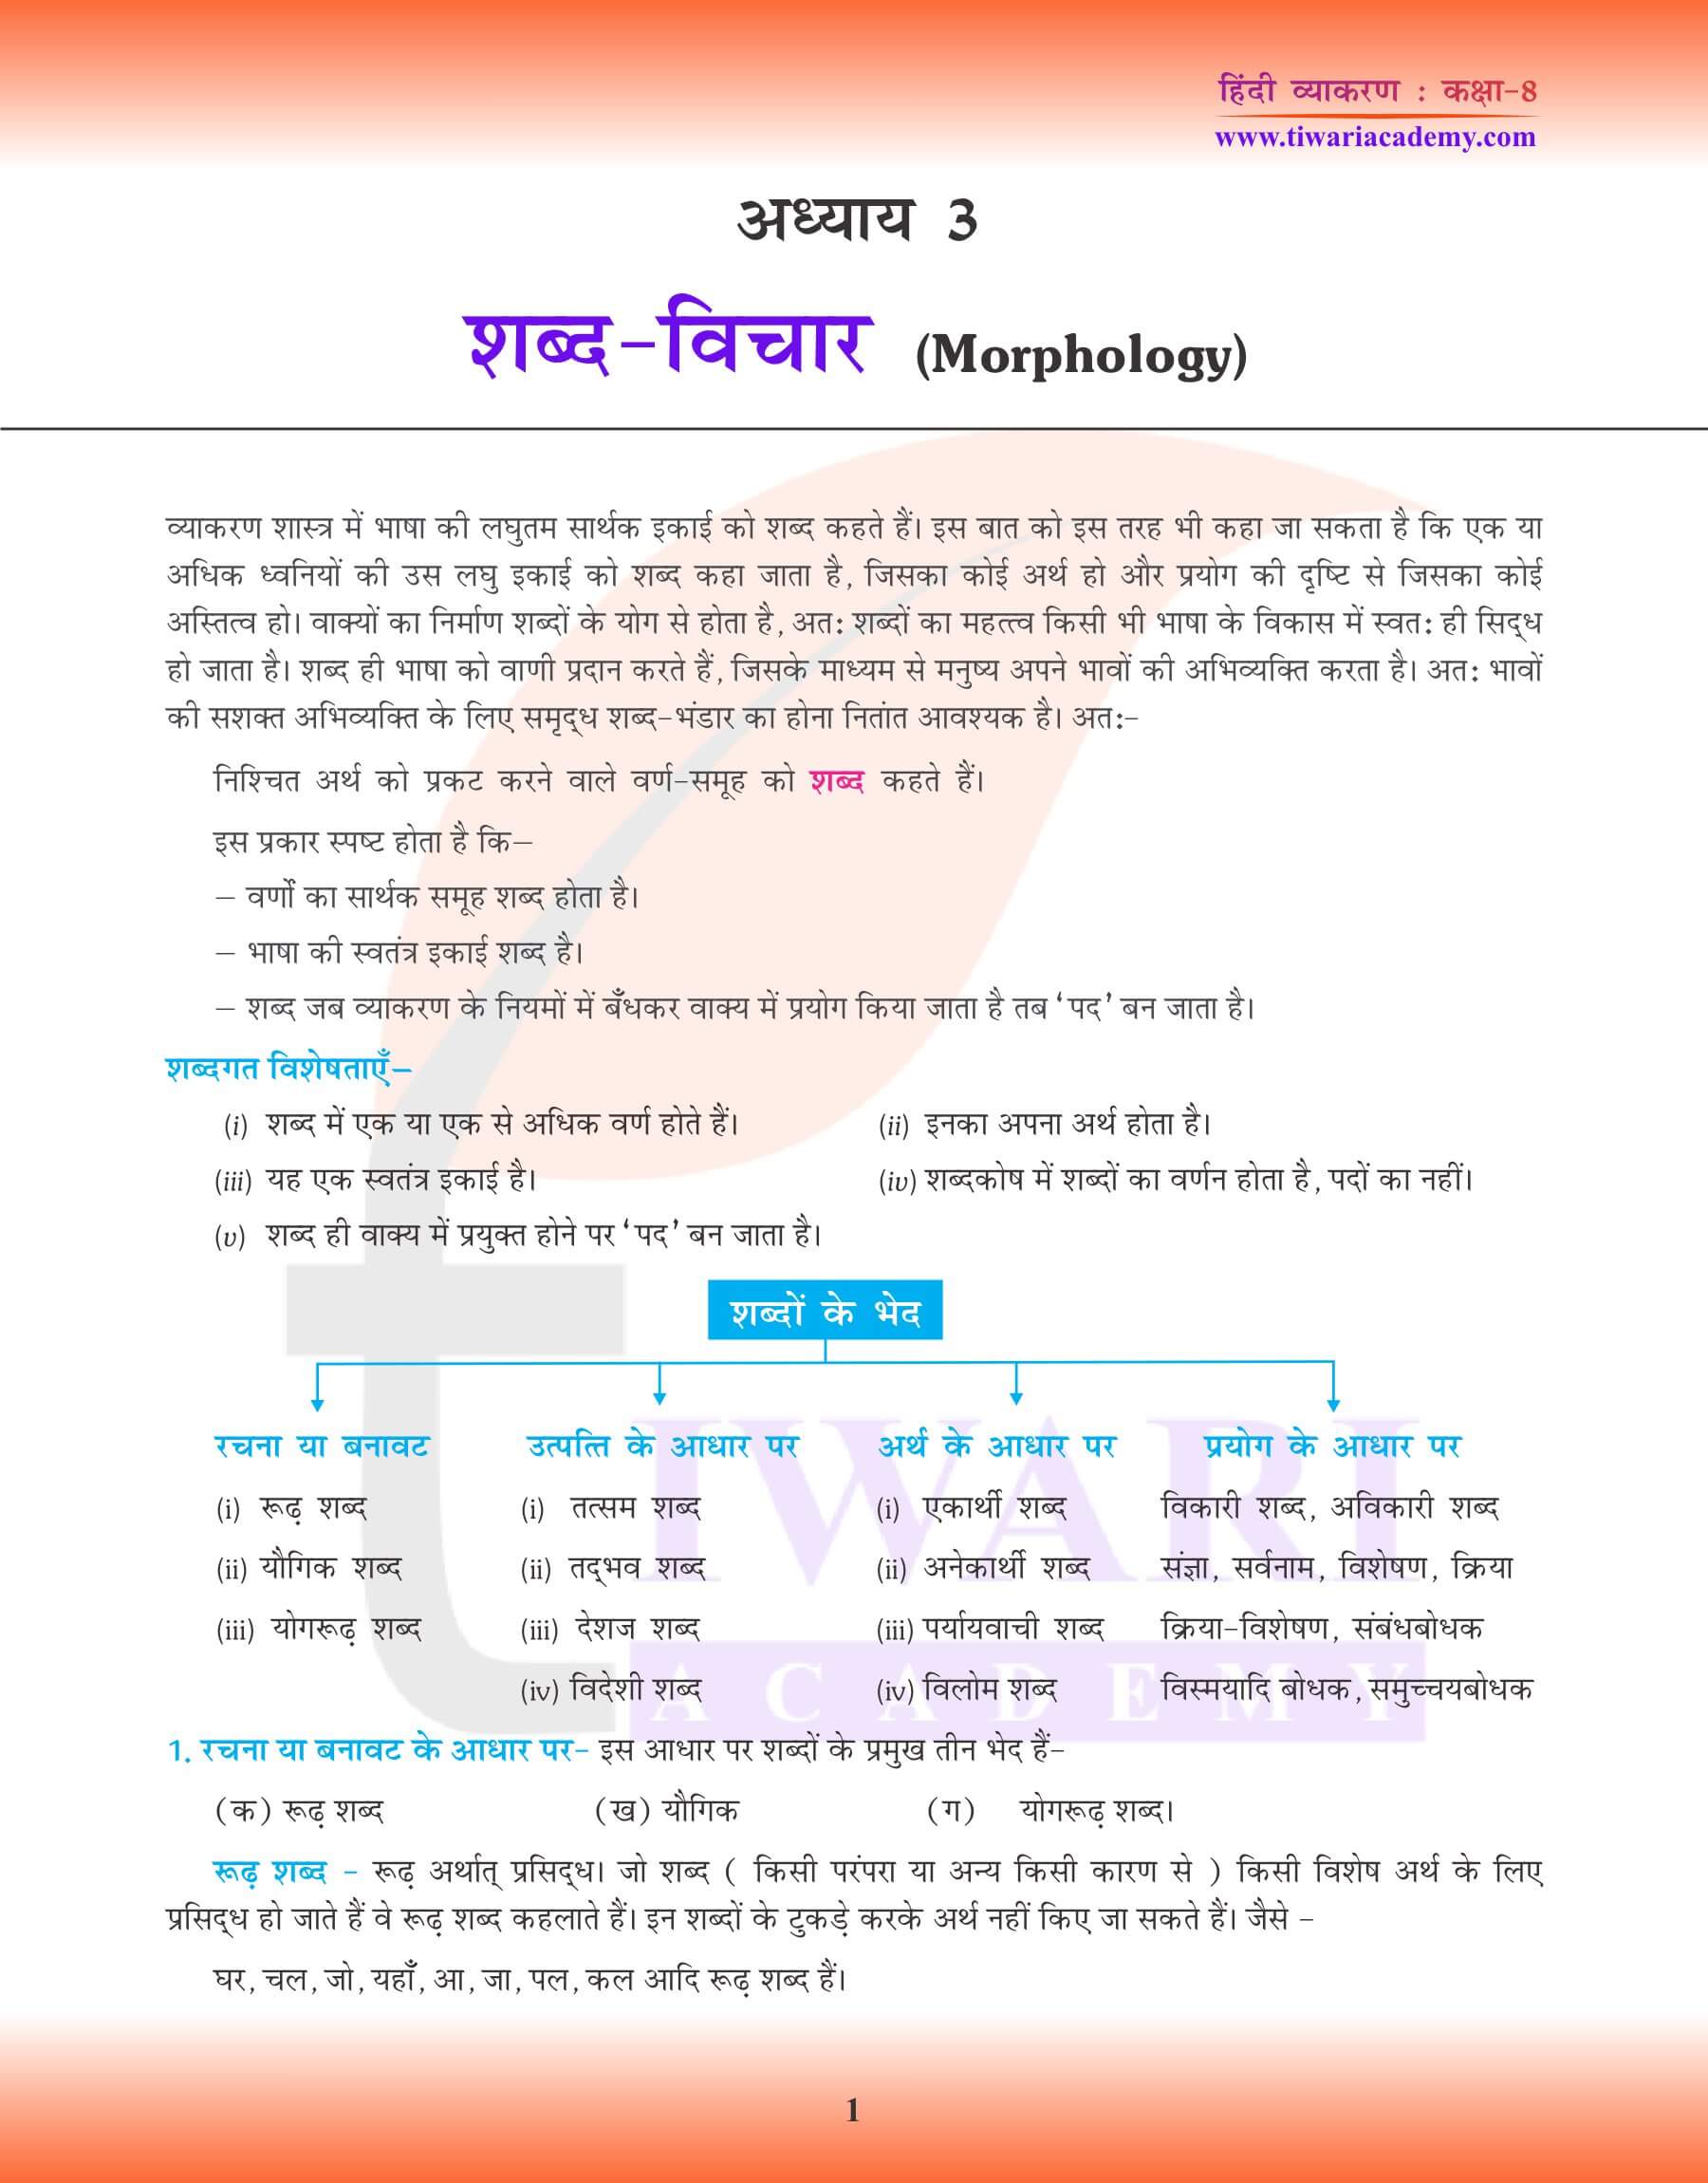 कक्षा 8 हिंदी व्याकरण में शब्द विचार